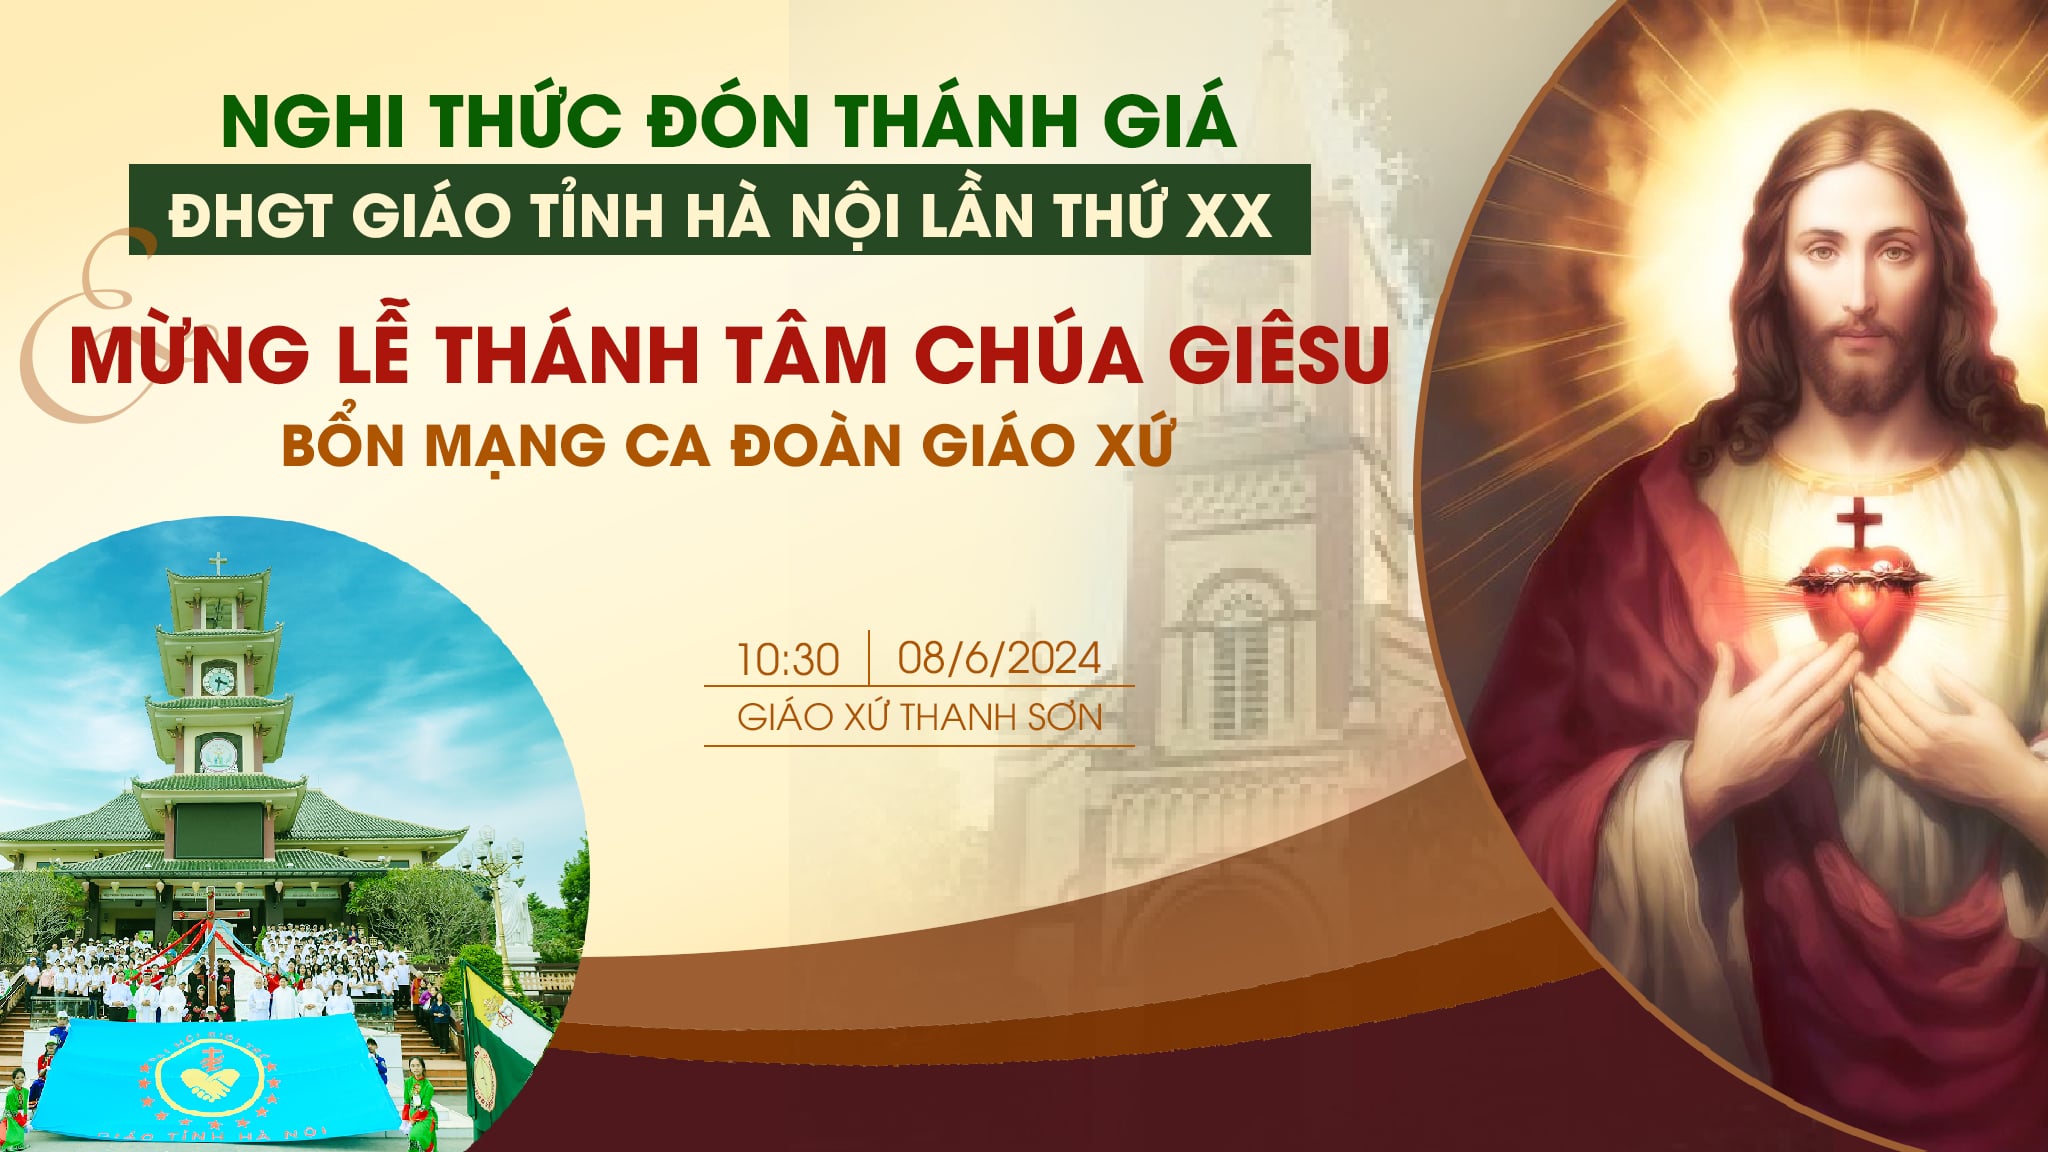 Giáo hạt Cao Bằng: Đón Thánh giá Đại hội Giới trẻ Giáo tỉnh Hà Nội, mừng Bổn mạng Ca đoàn Thánh Tâm